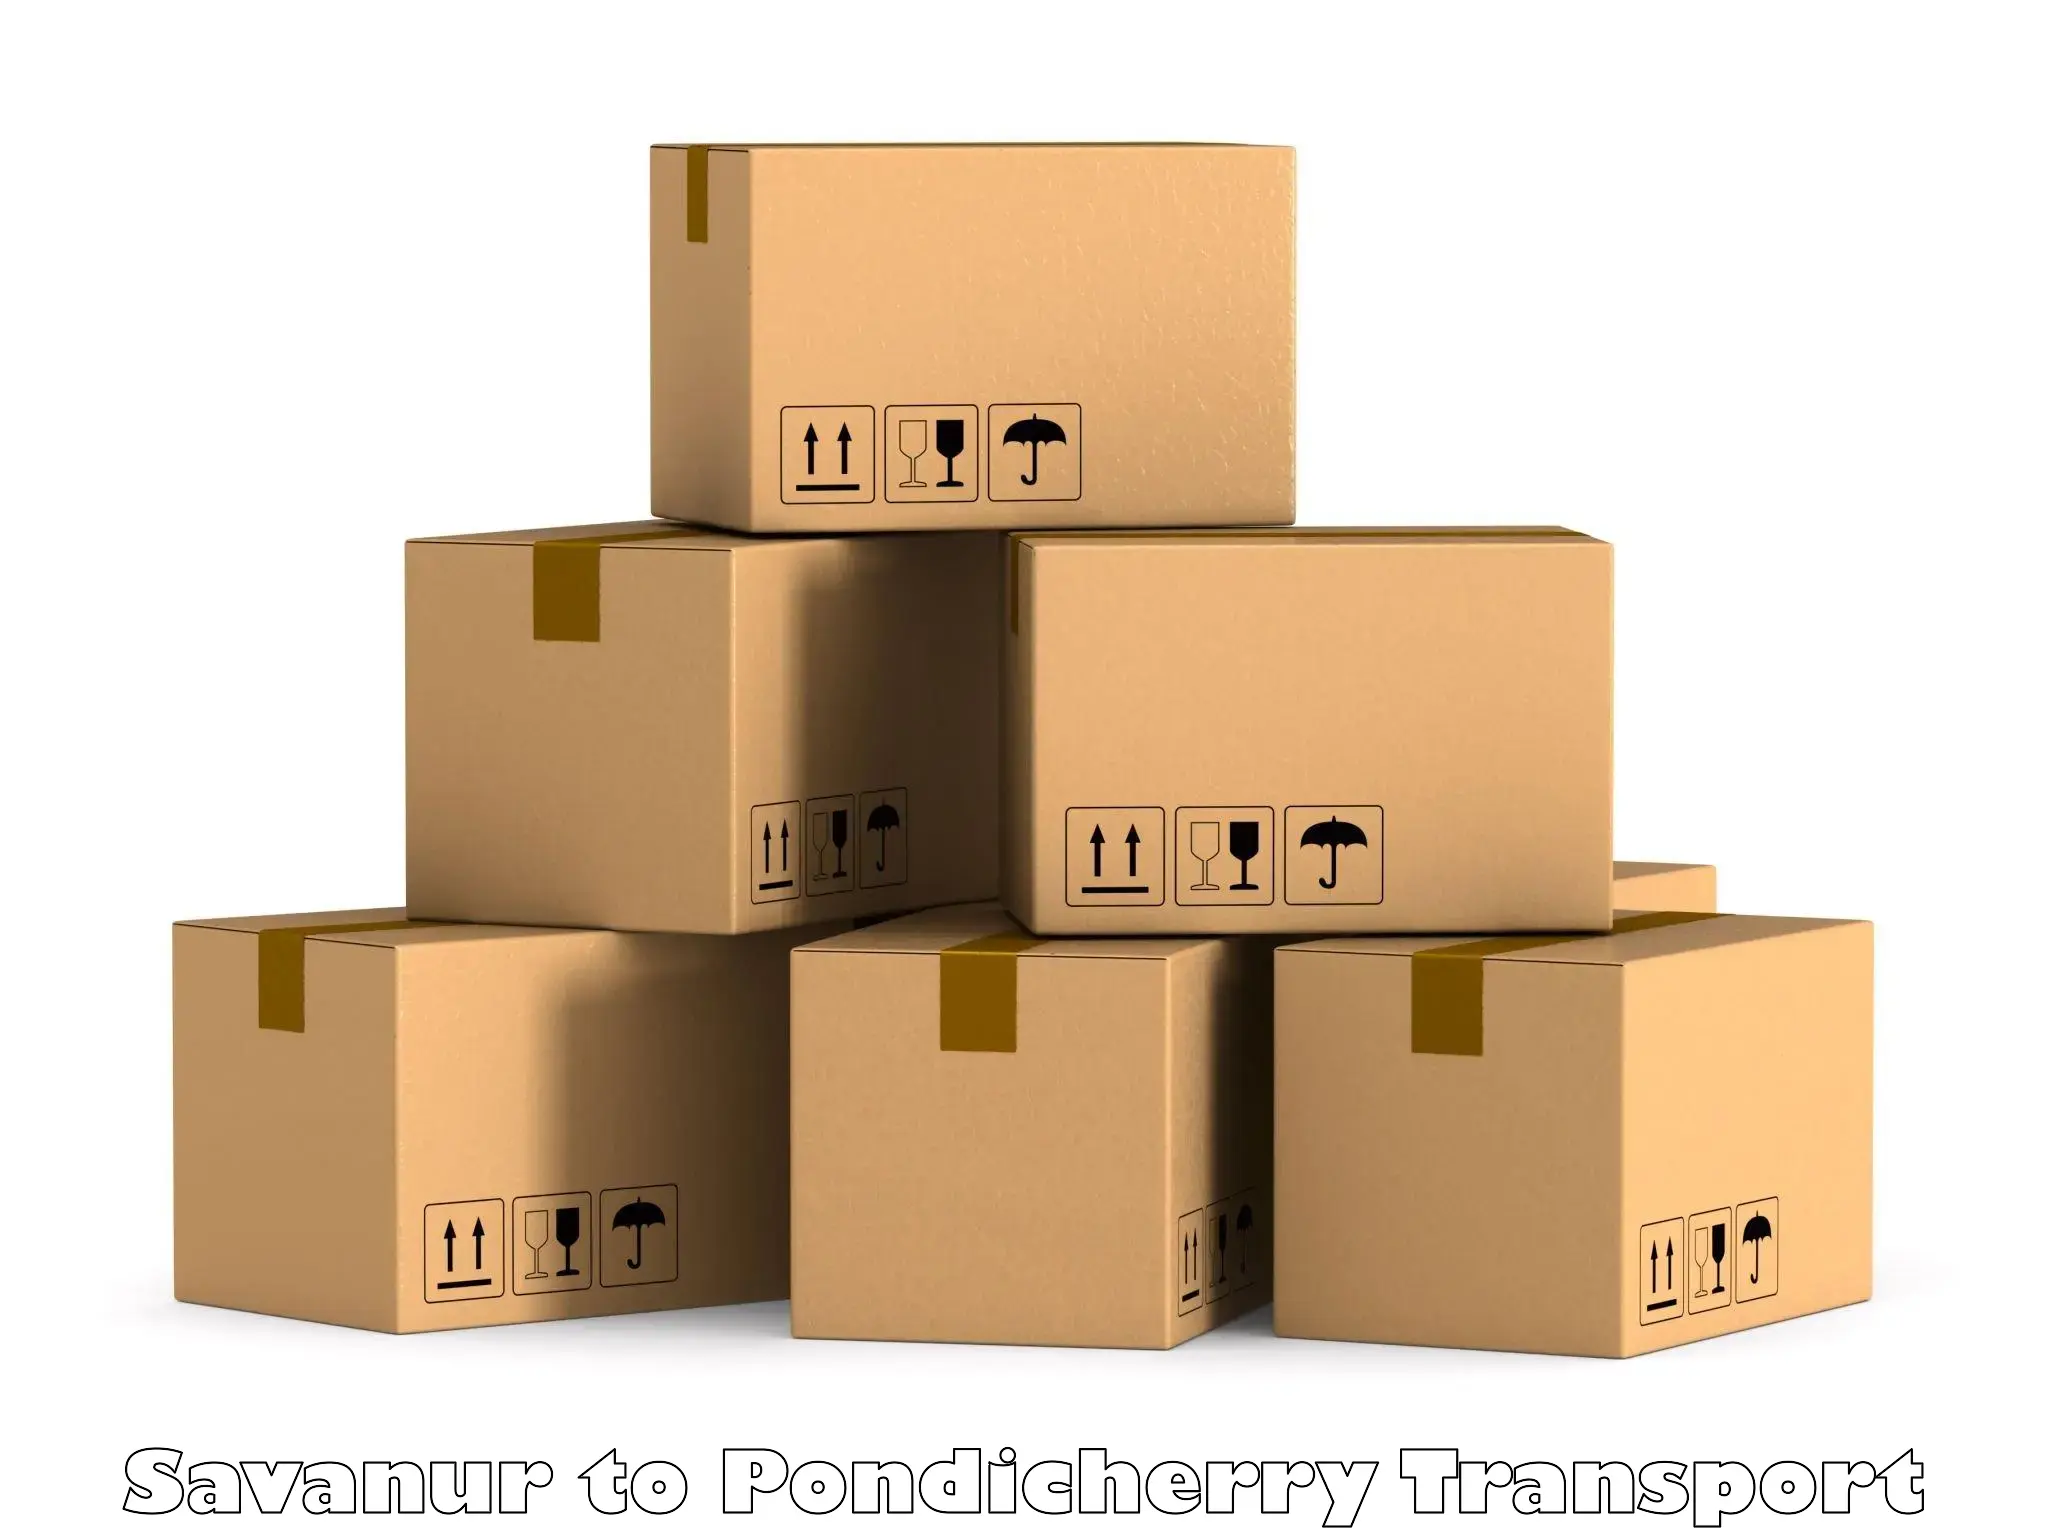 Goods delivery service Savanur to Pondicherry